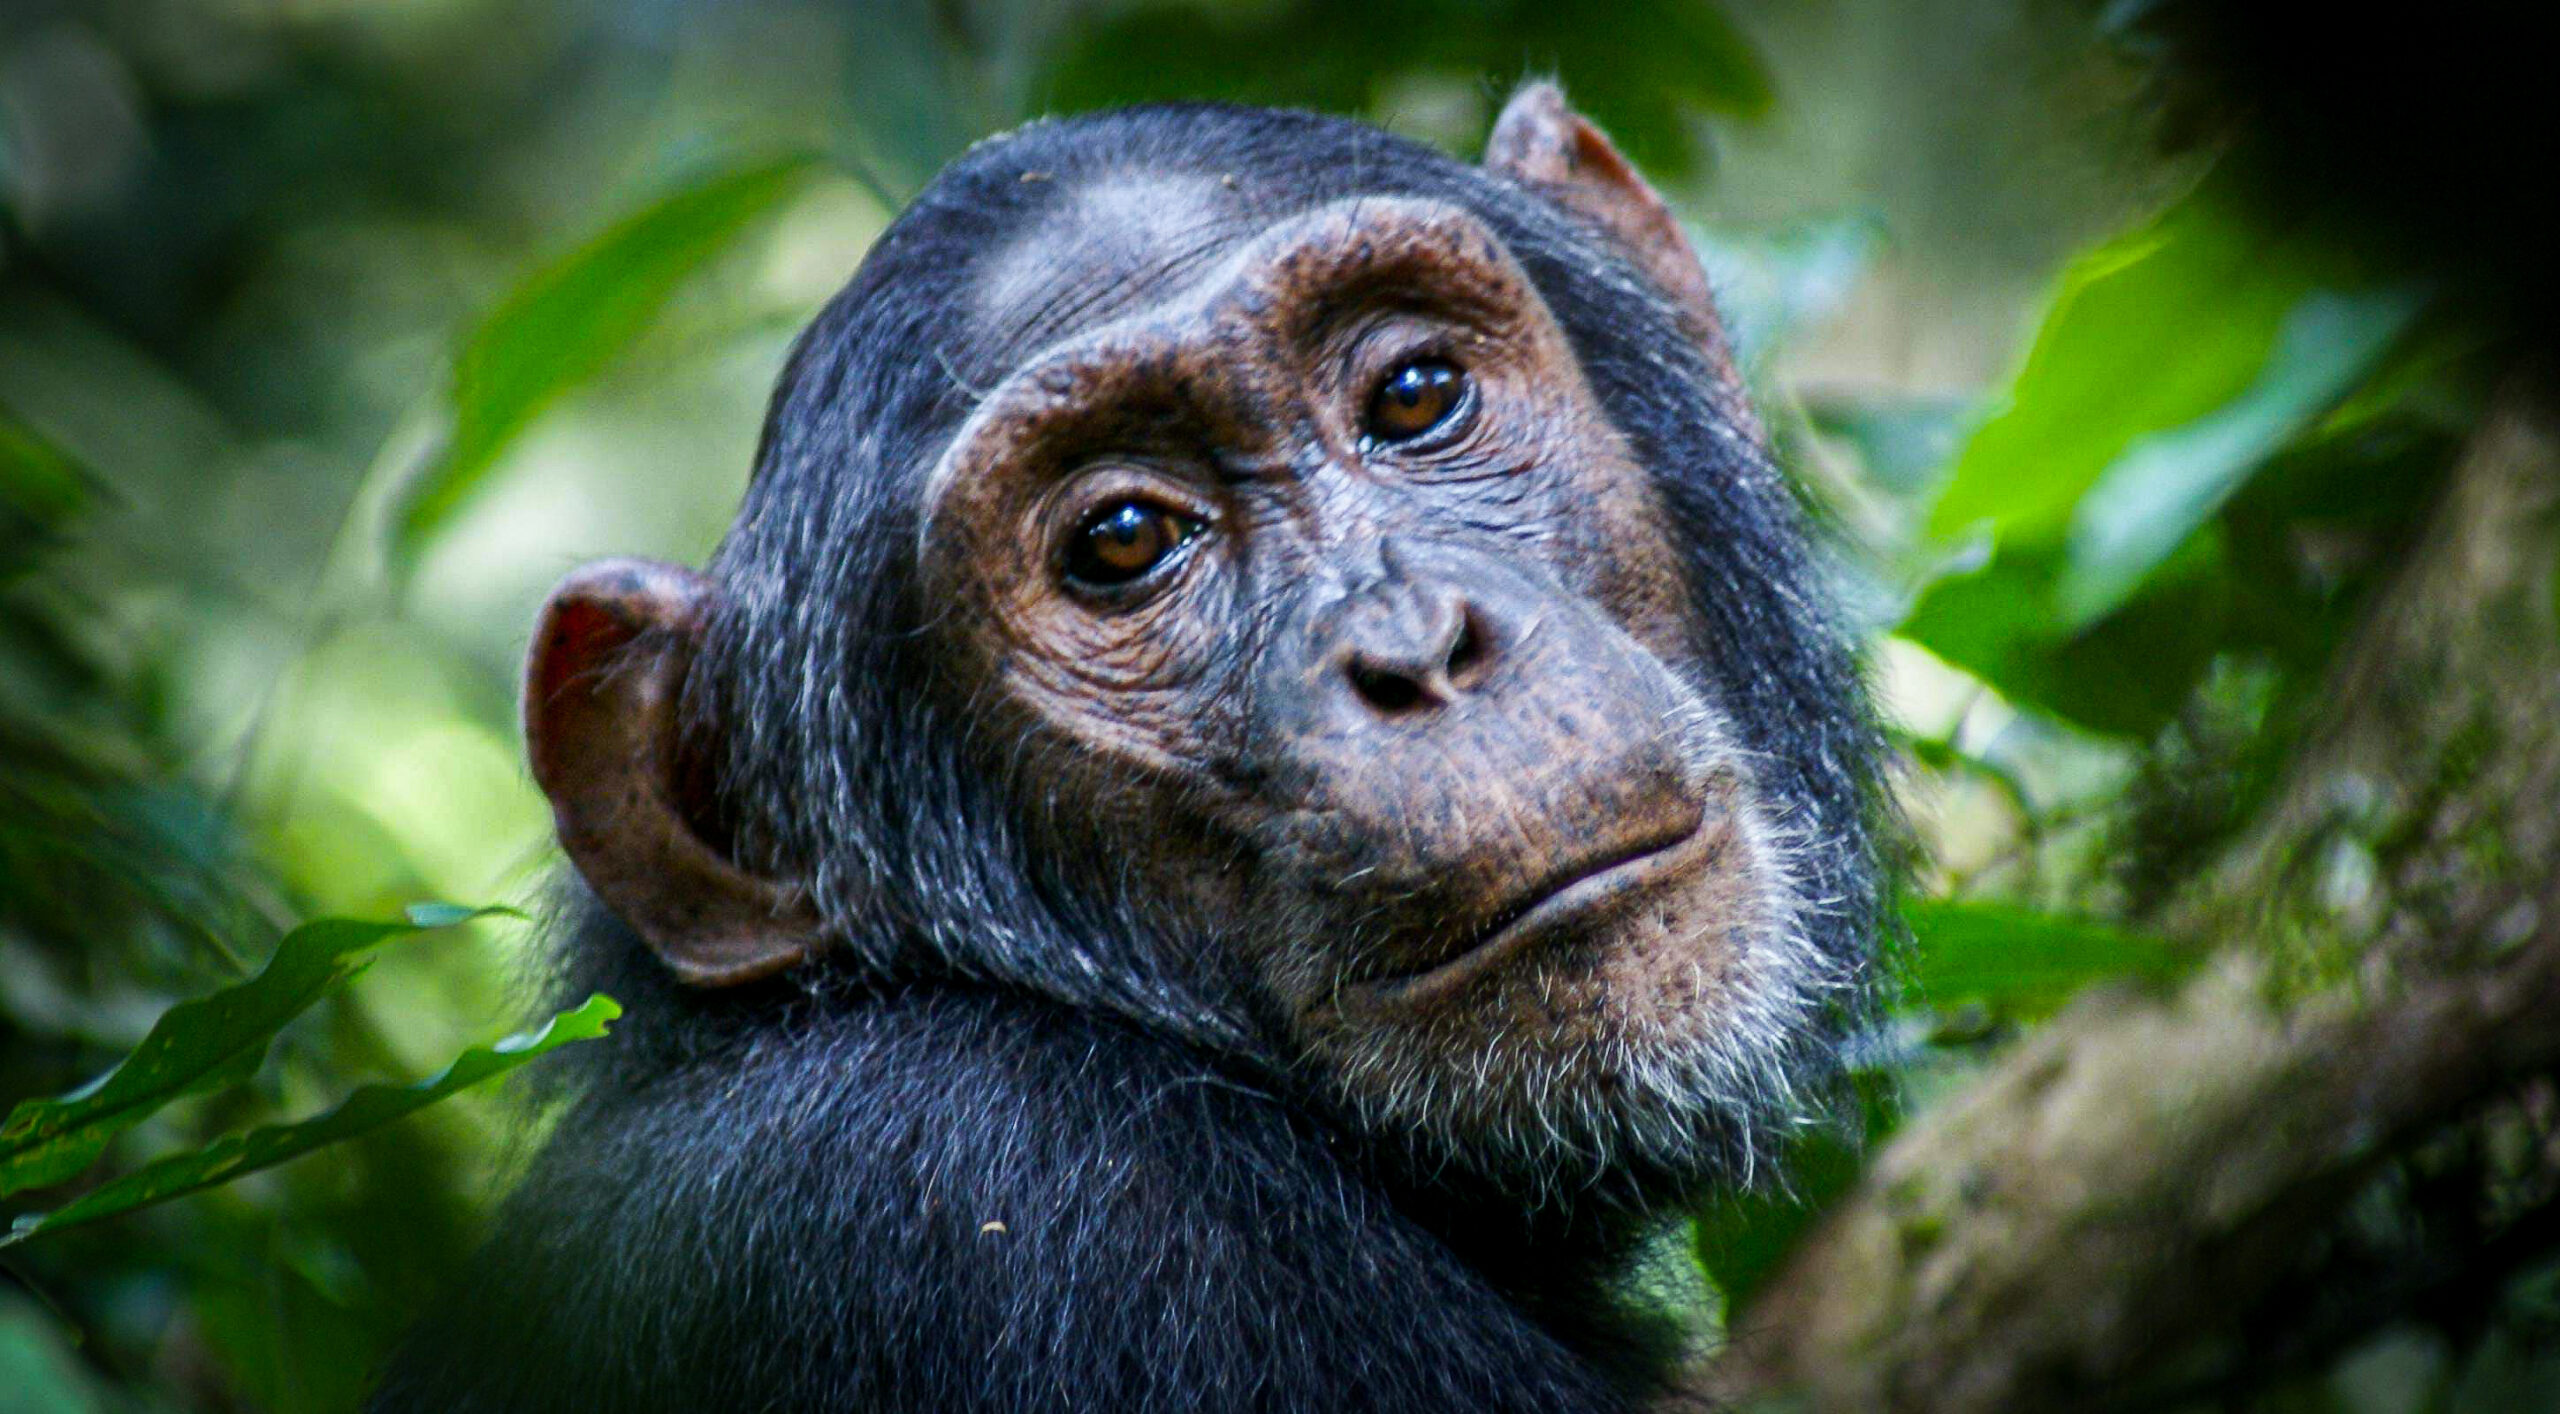 4 Days Rwanda Gorilla and Chimpanzee trekking